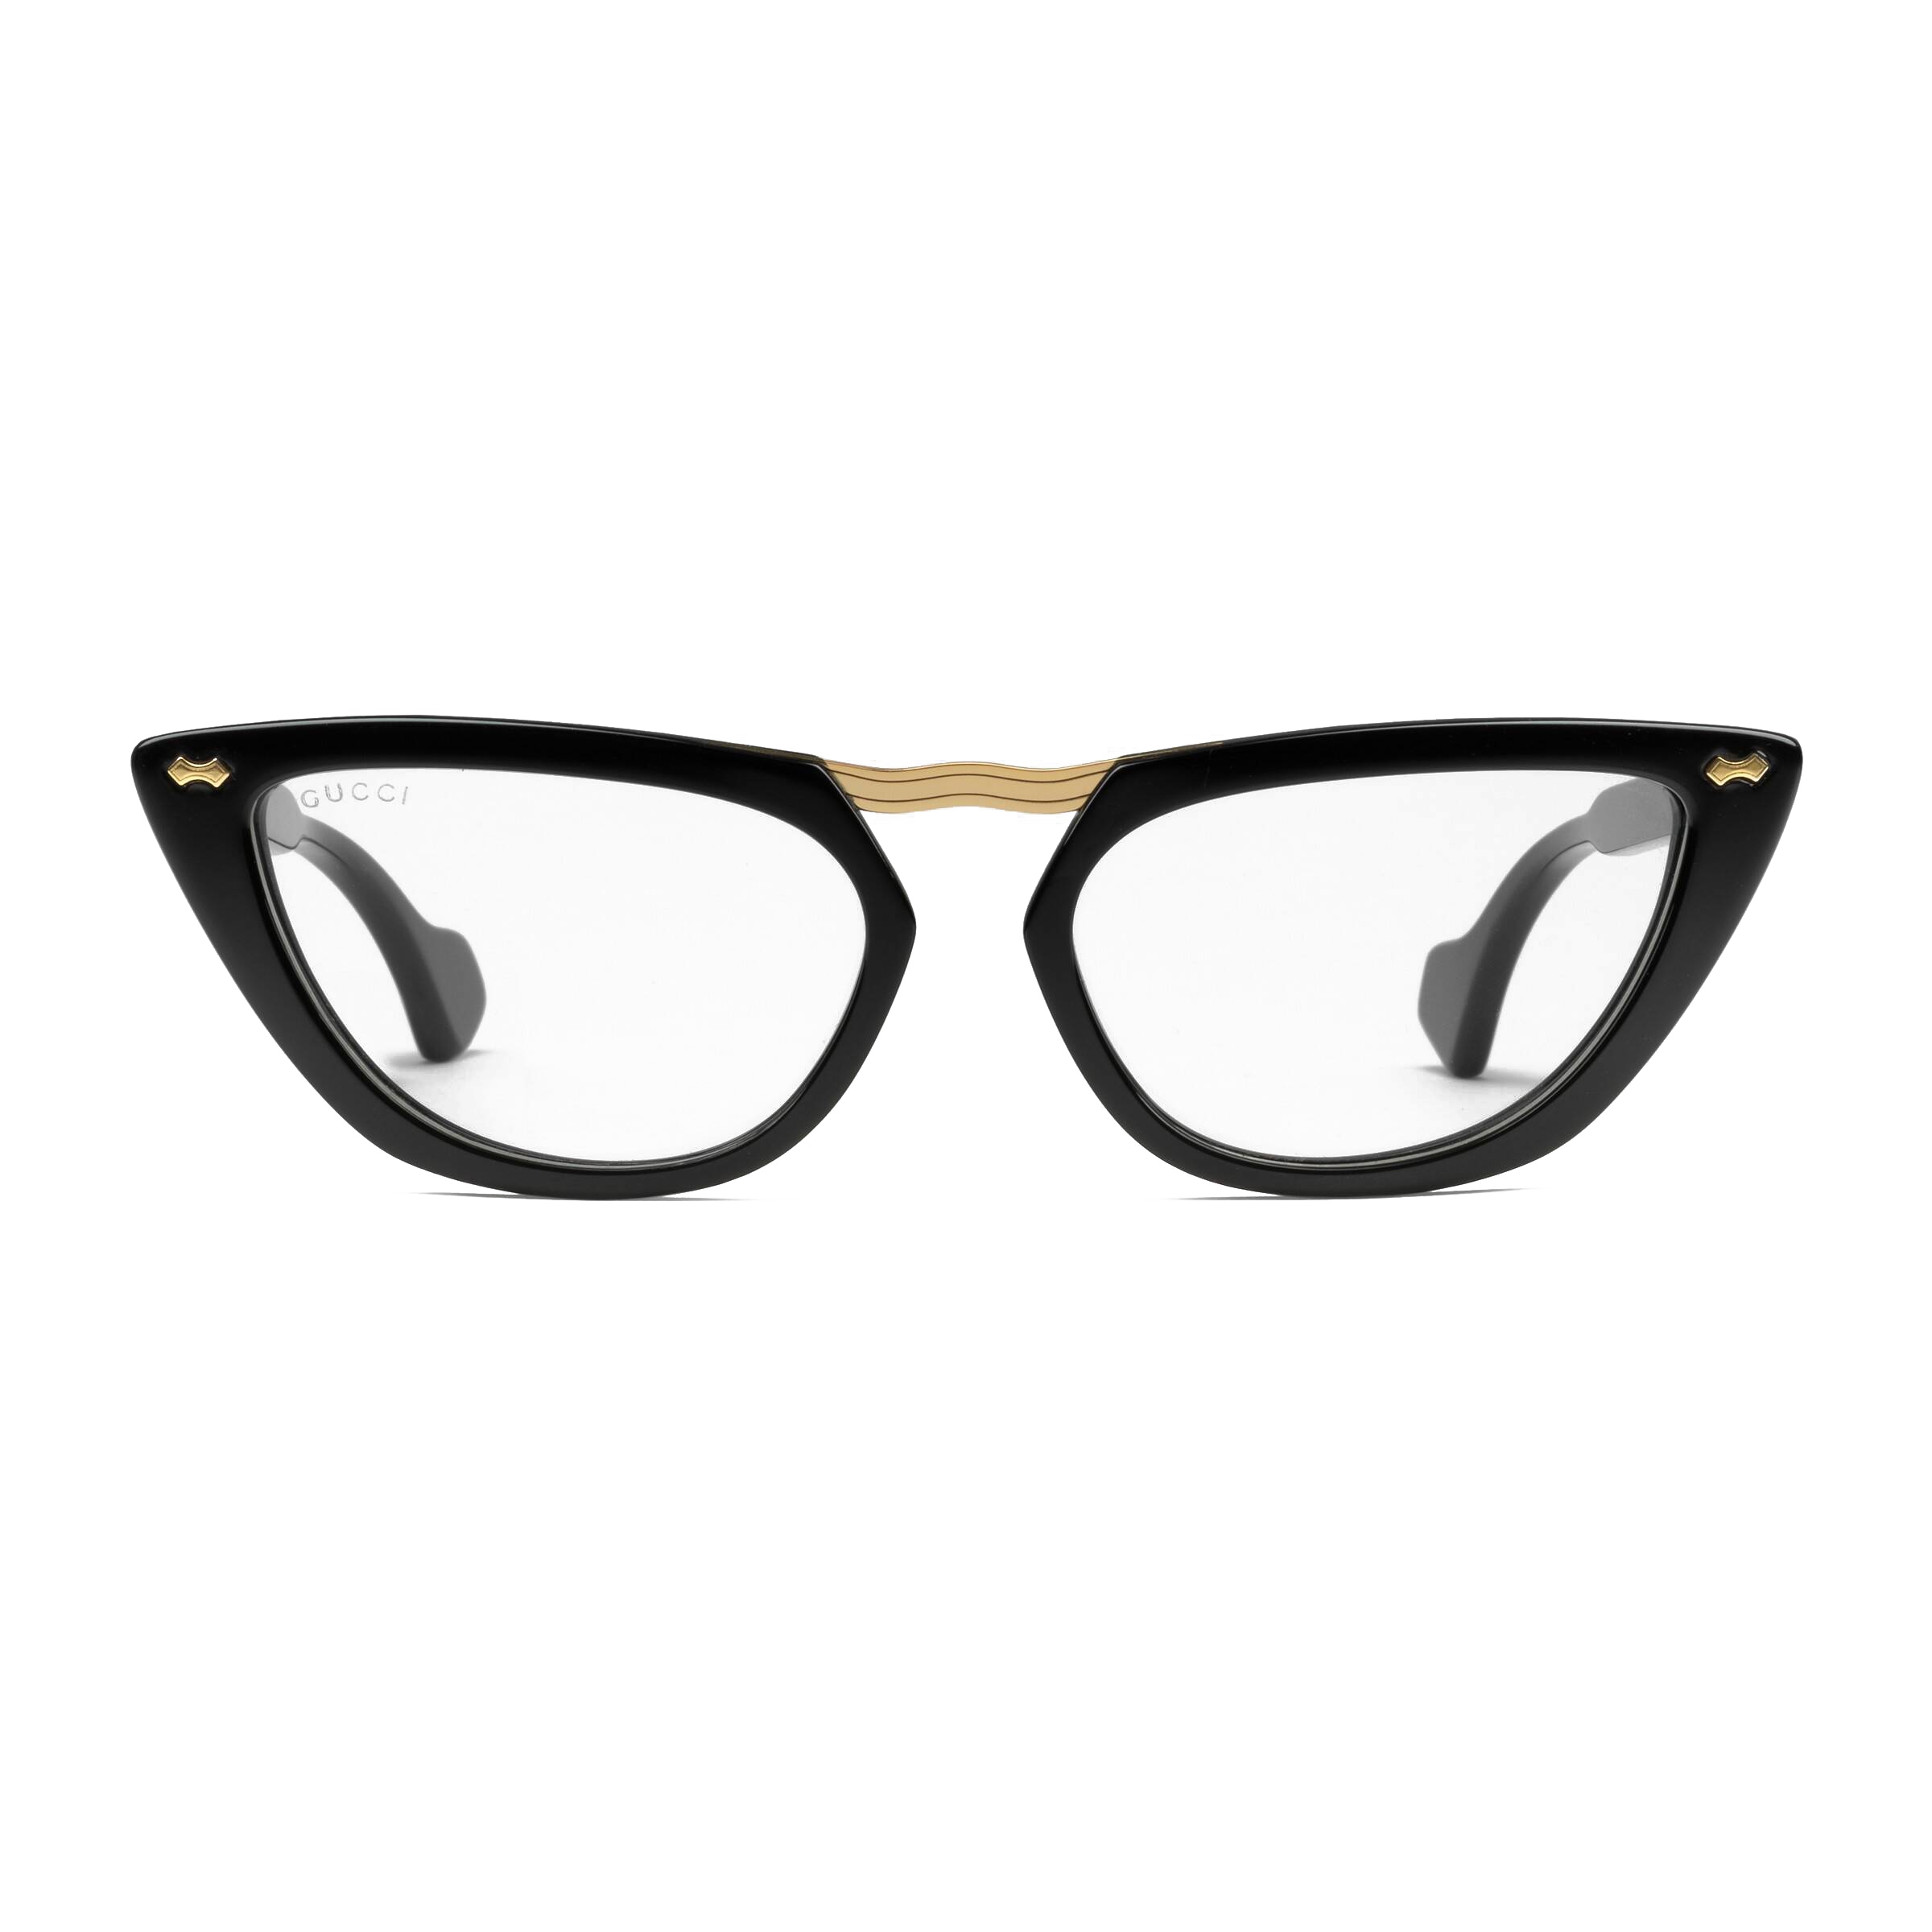 gucci cat eye prescription glasses